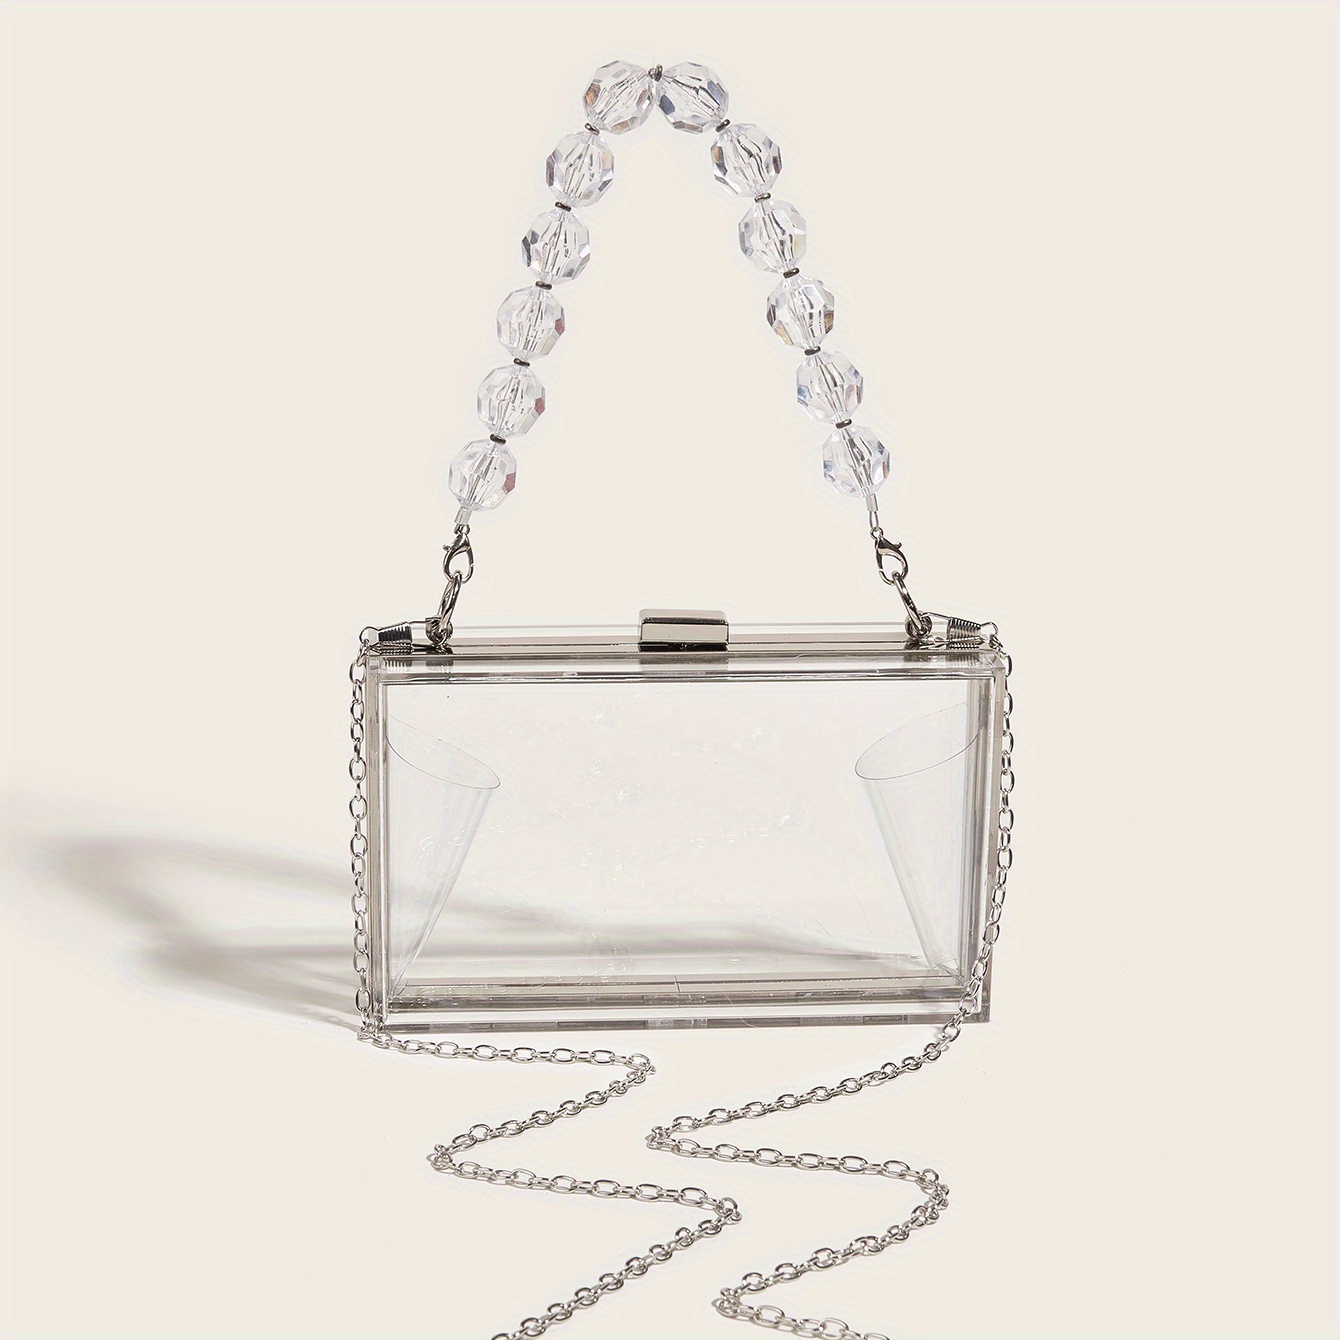 Wholesale Transparent clear acrylic square box clutch purse bag